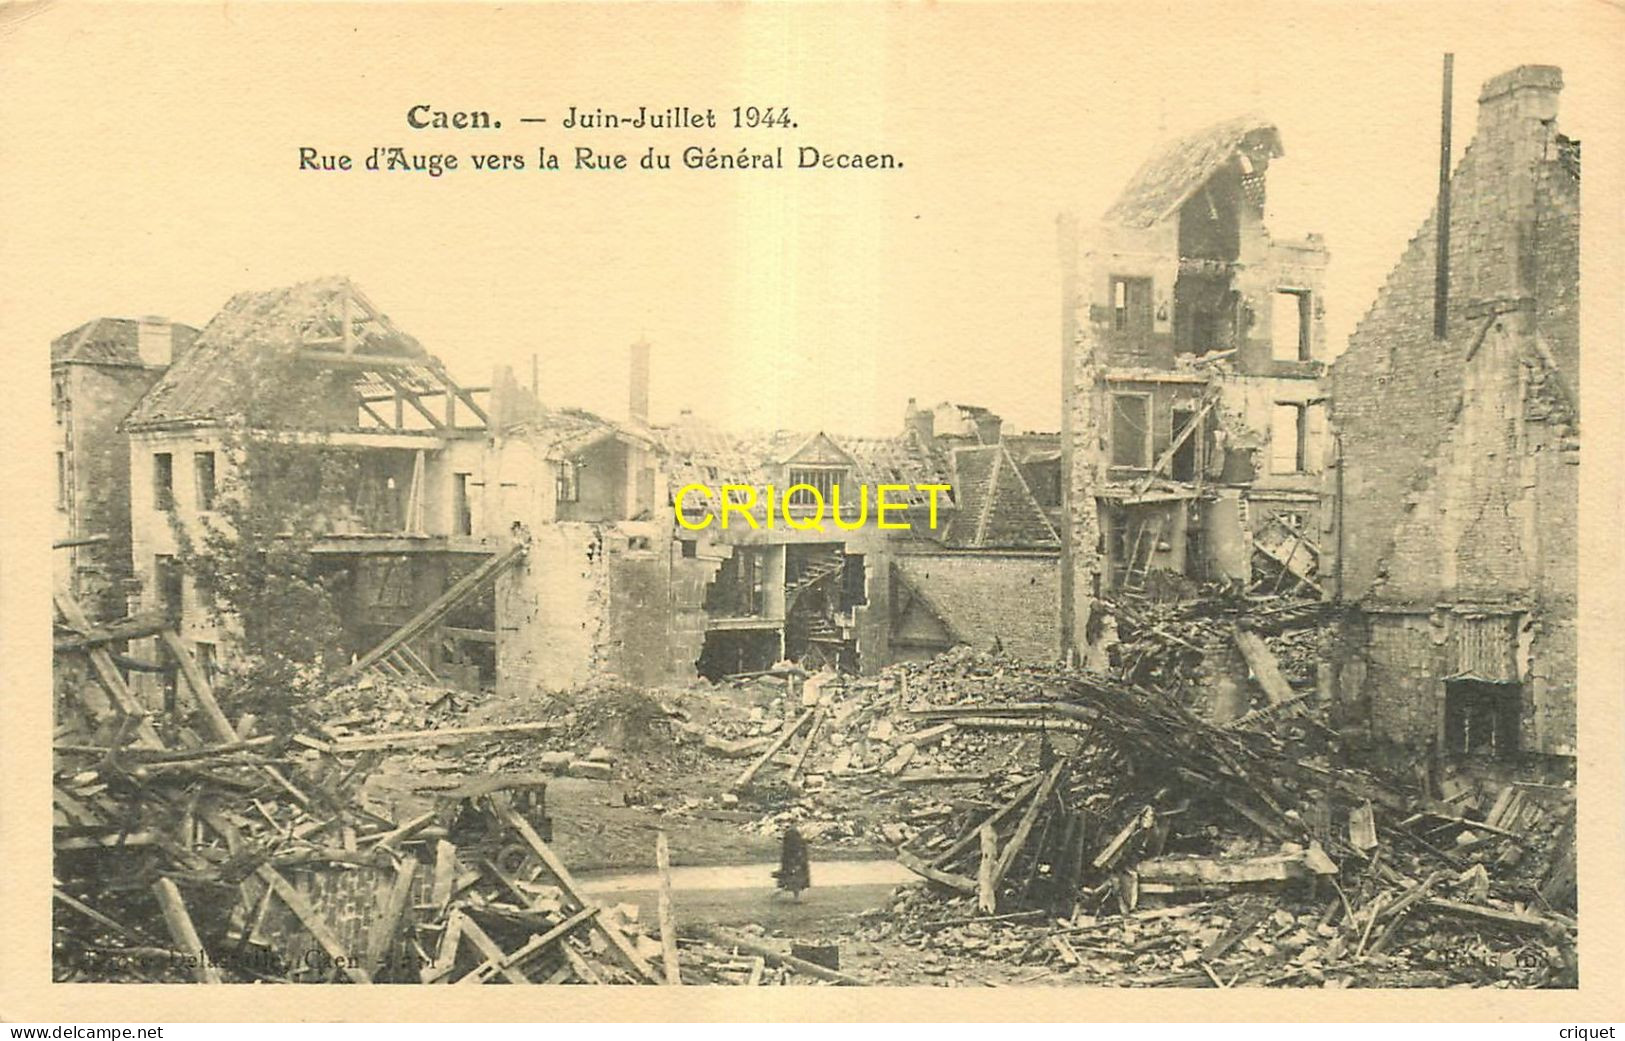 14 Caen, lot de 13 cartes différentes des bombardements de juin-juillet 1944